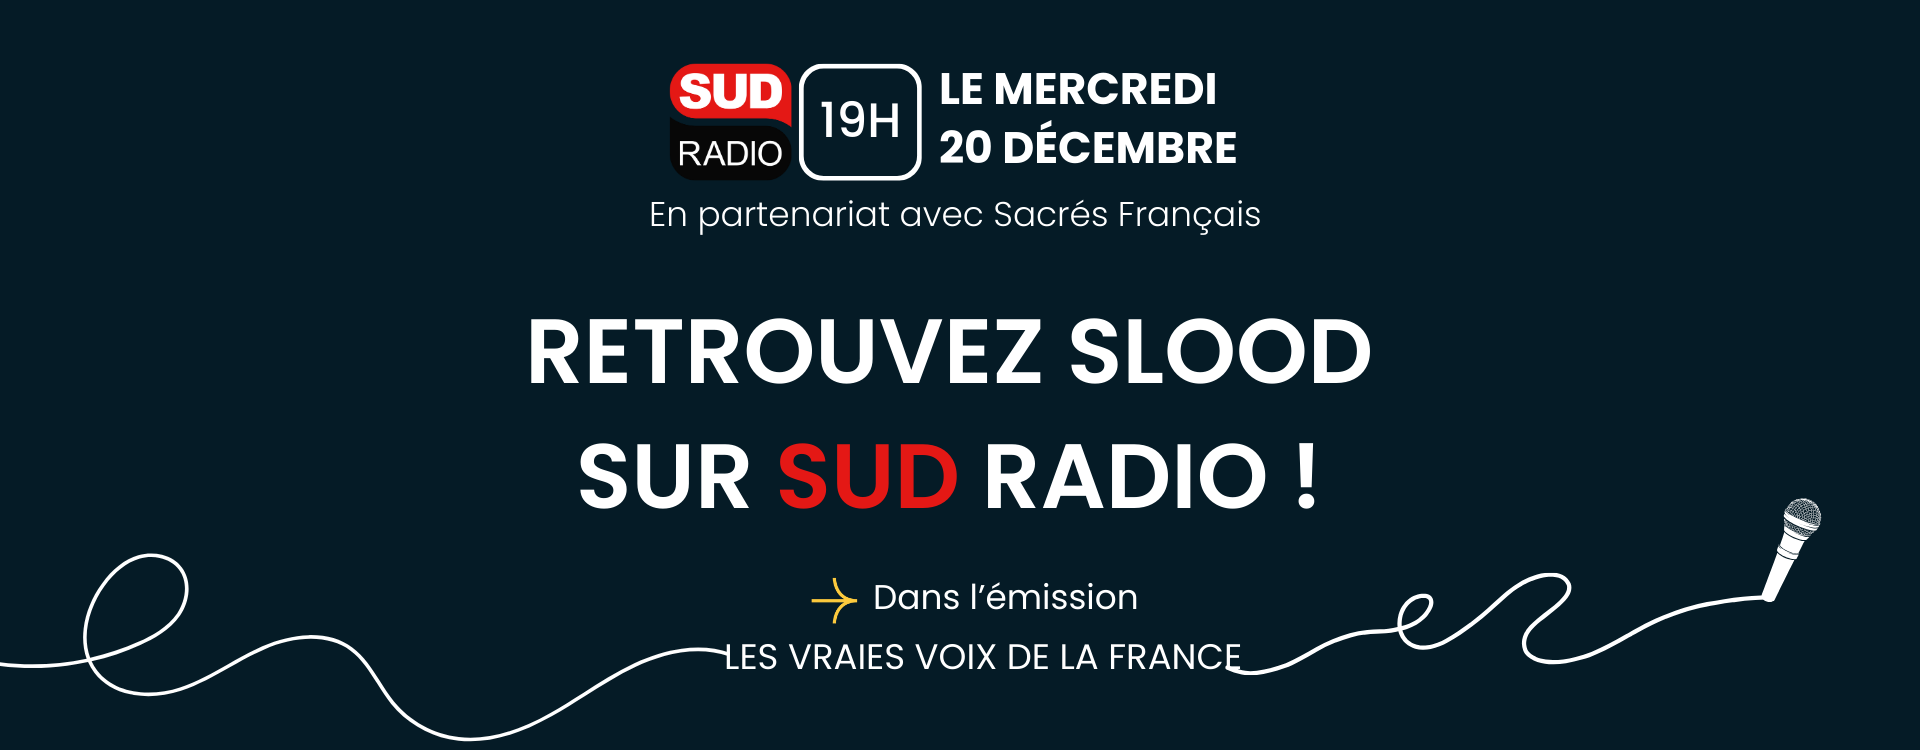 Sud Radio x Slood en direct sur Sud Radio